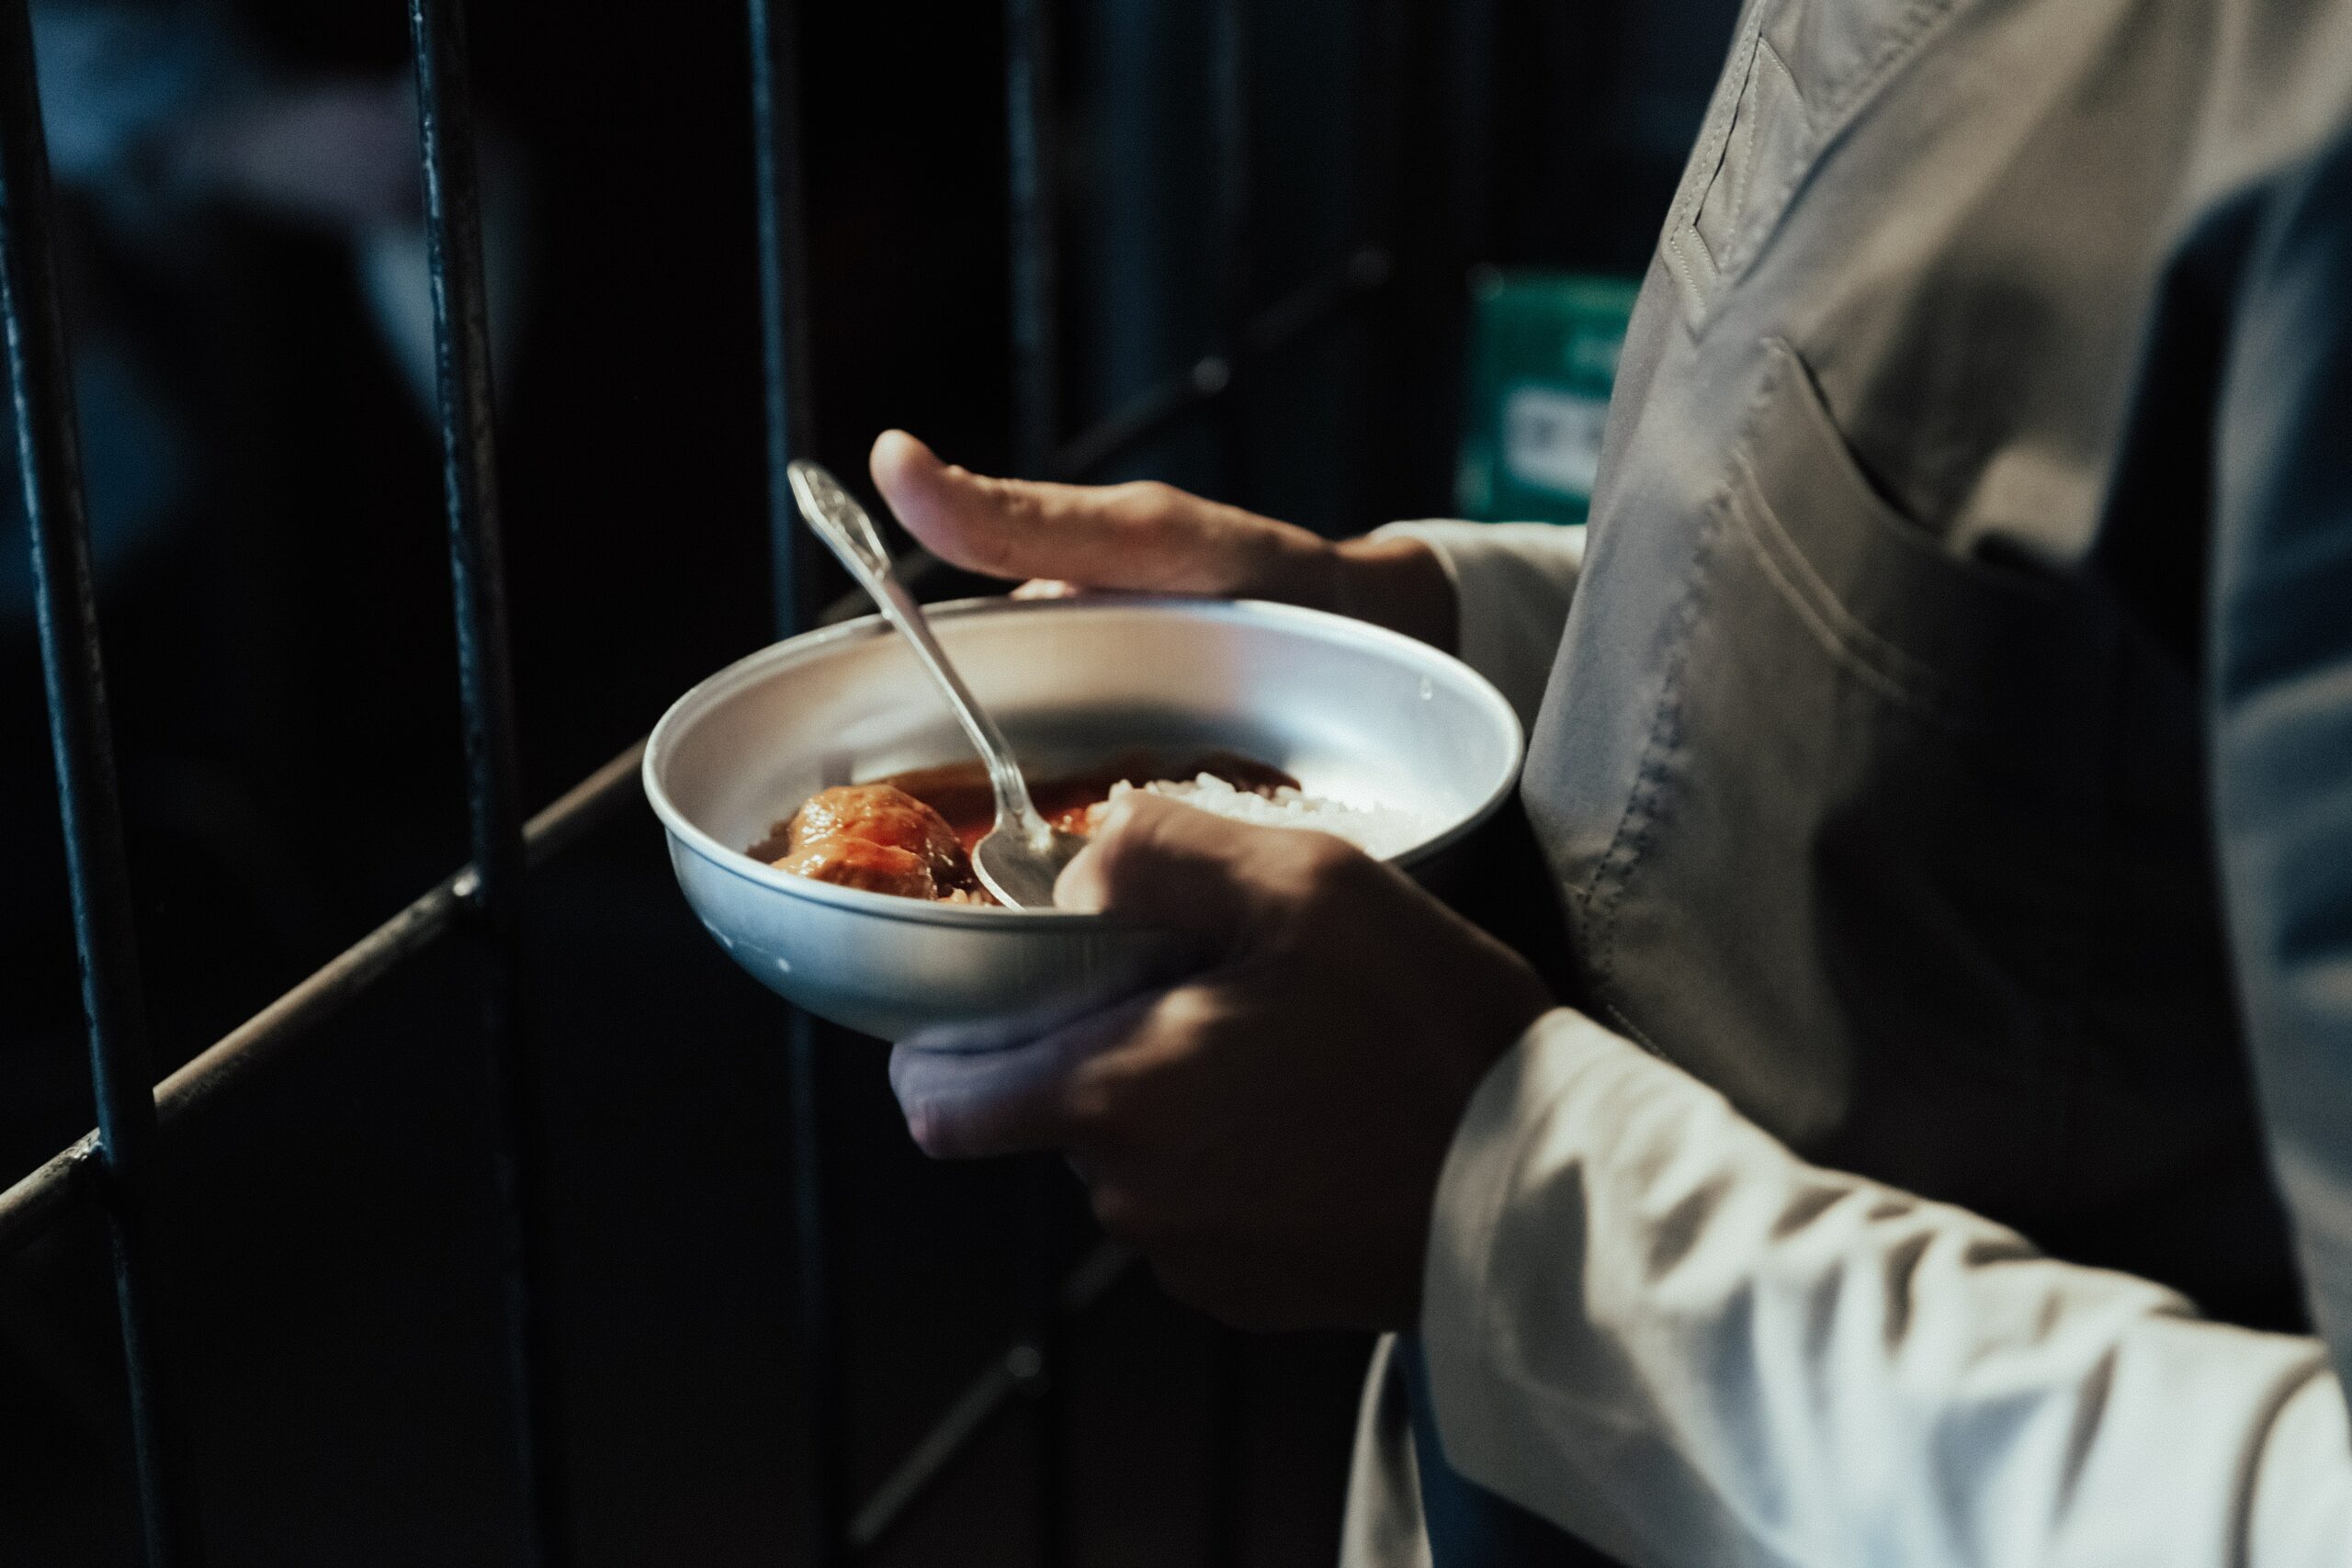 A prisoner holds a bowl of food